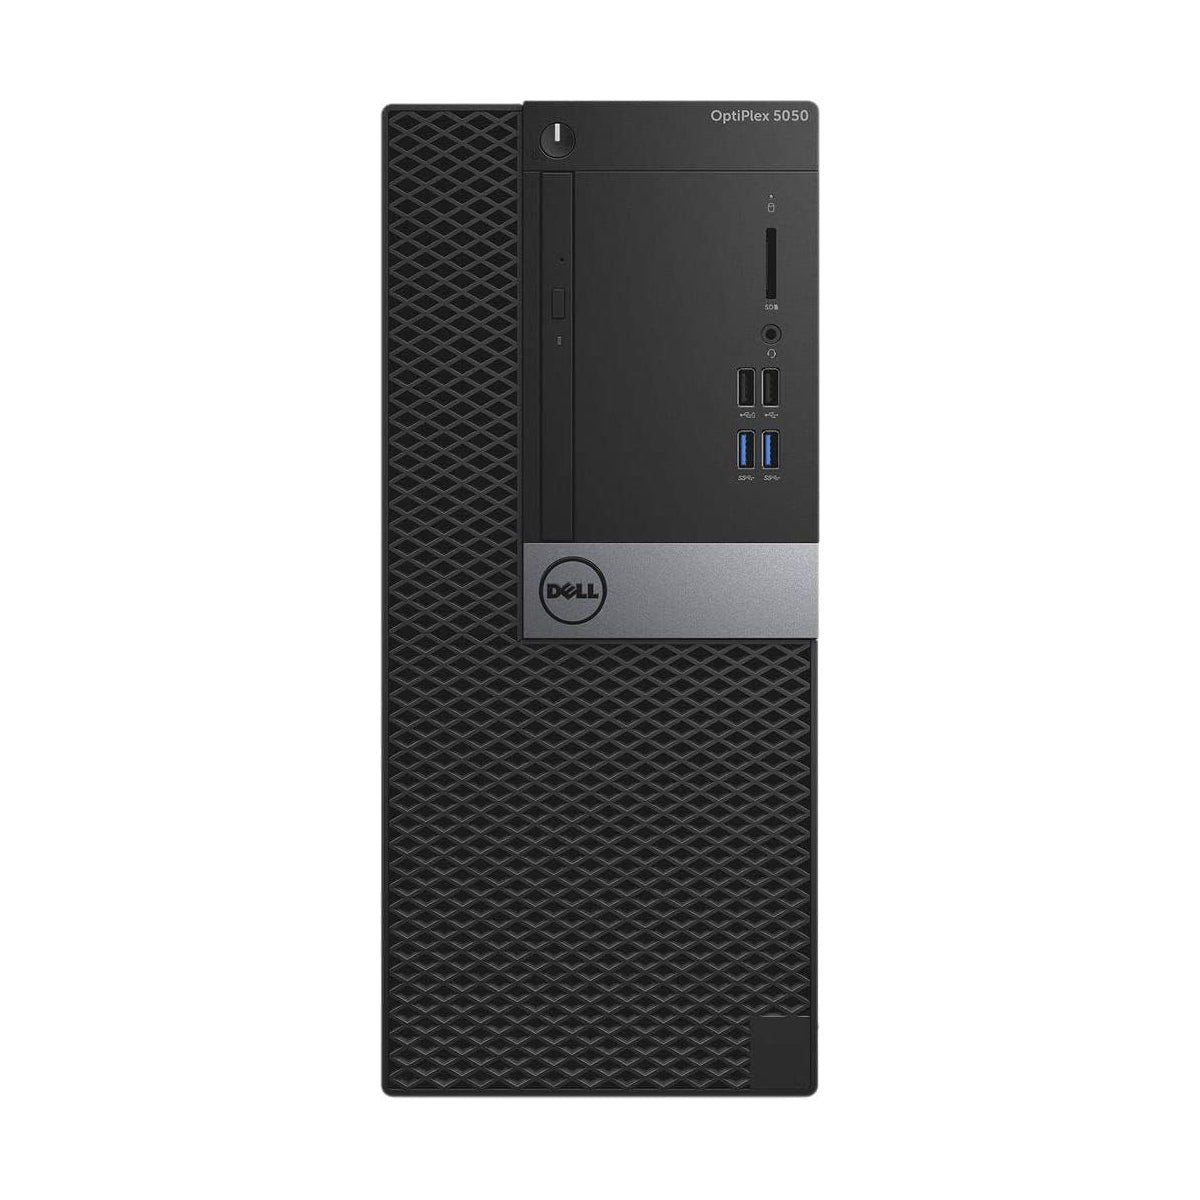 Dell Optiplex 5050 Core i5-6500 Desktop Computer Offers (New OB)